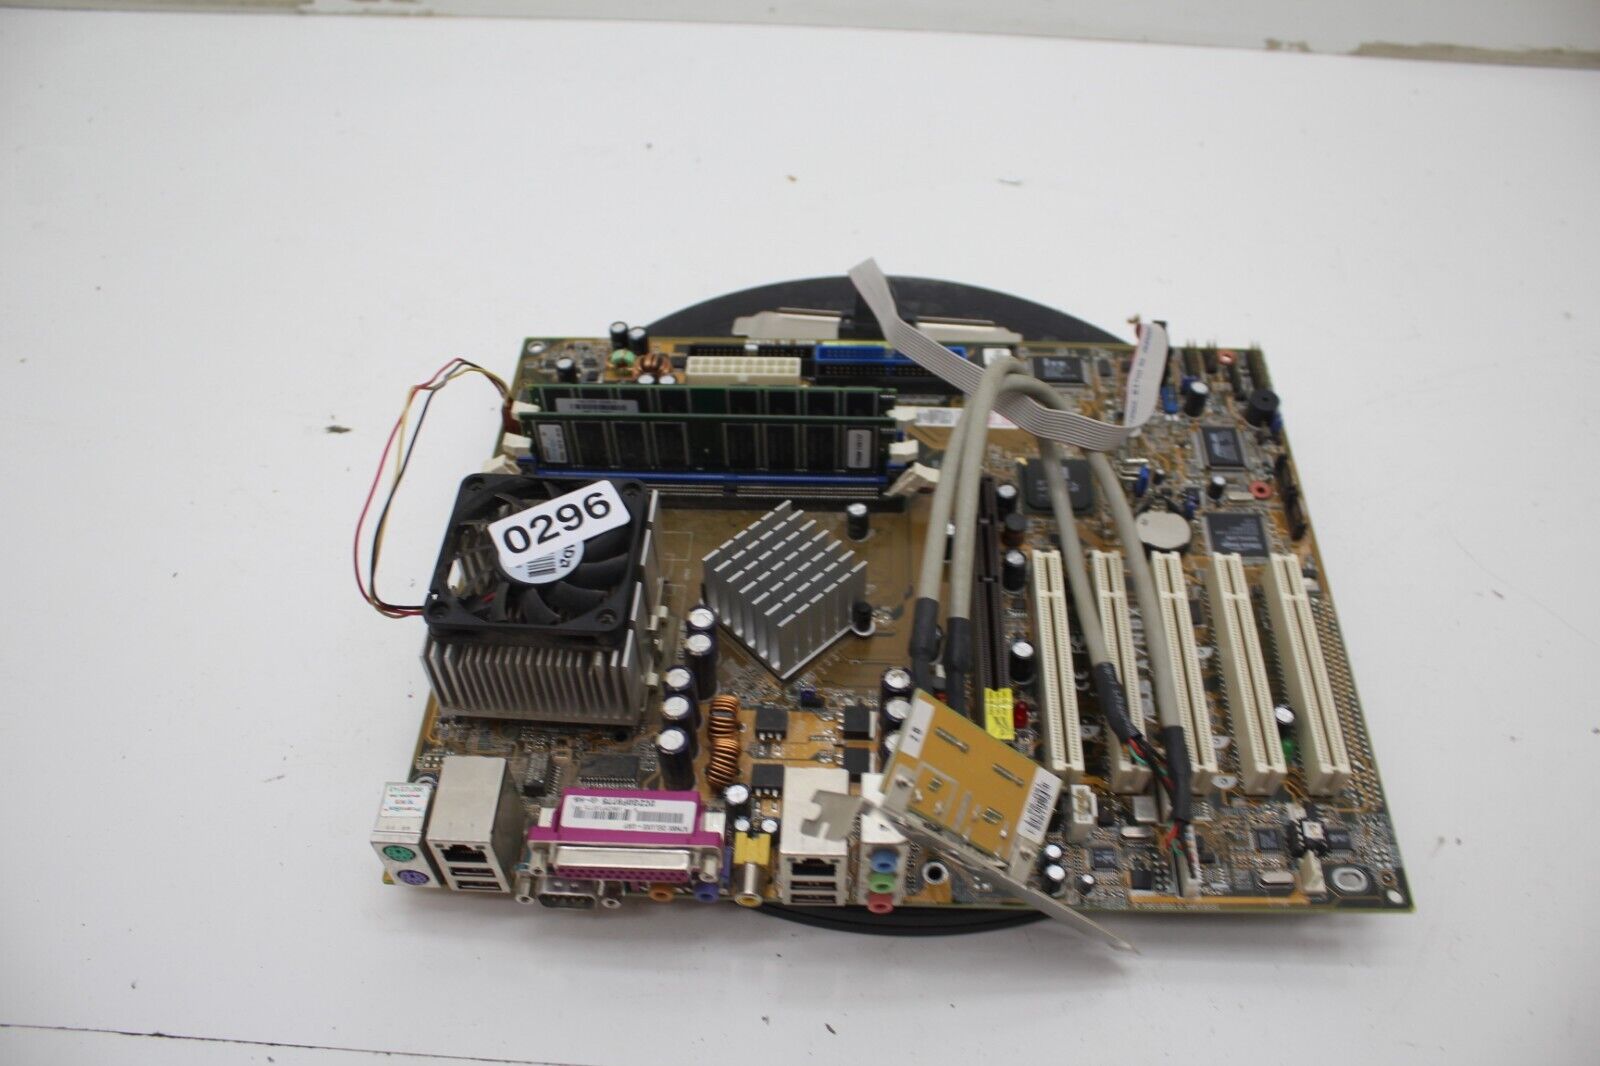 Asus Motherboard A7N8X 2/ AMD Athlon XP 1800+ 2GB Ram No I/O